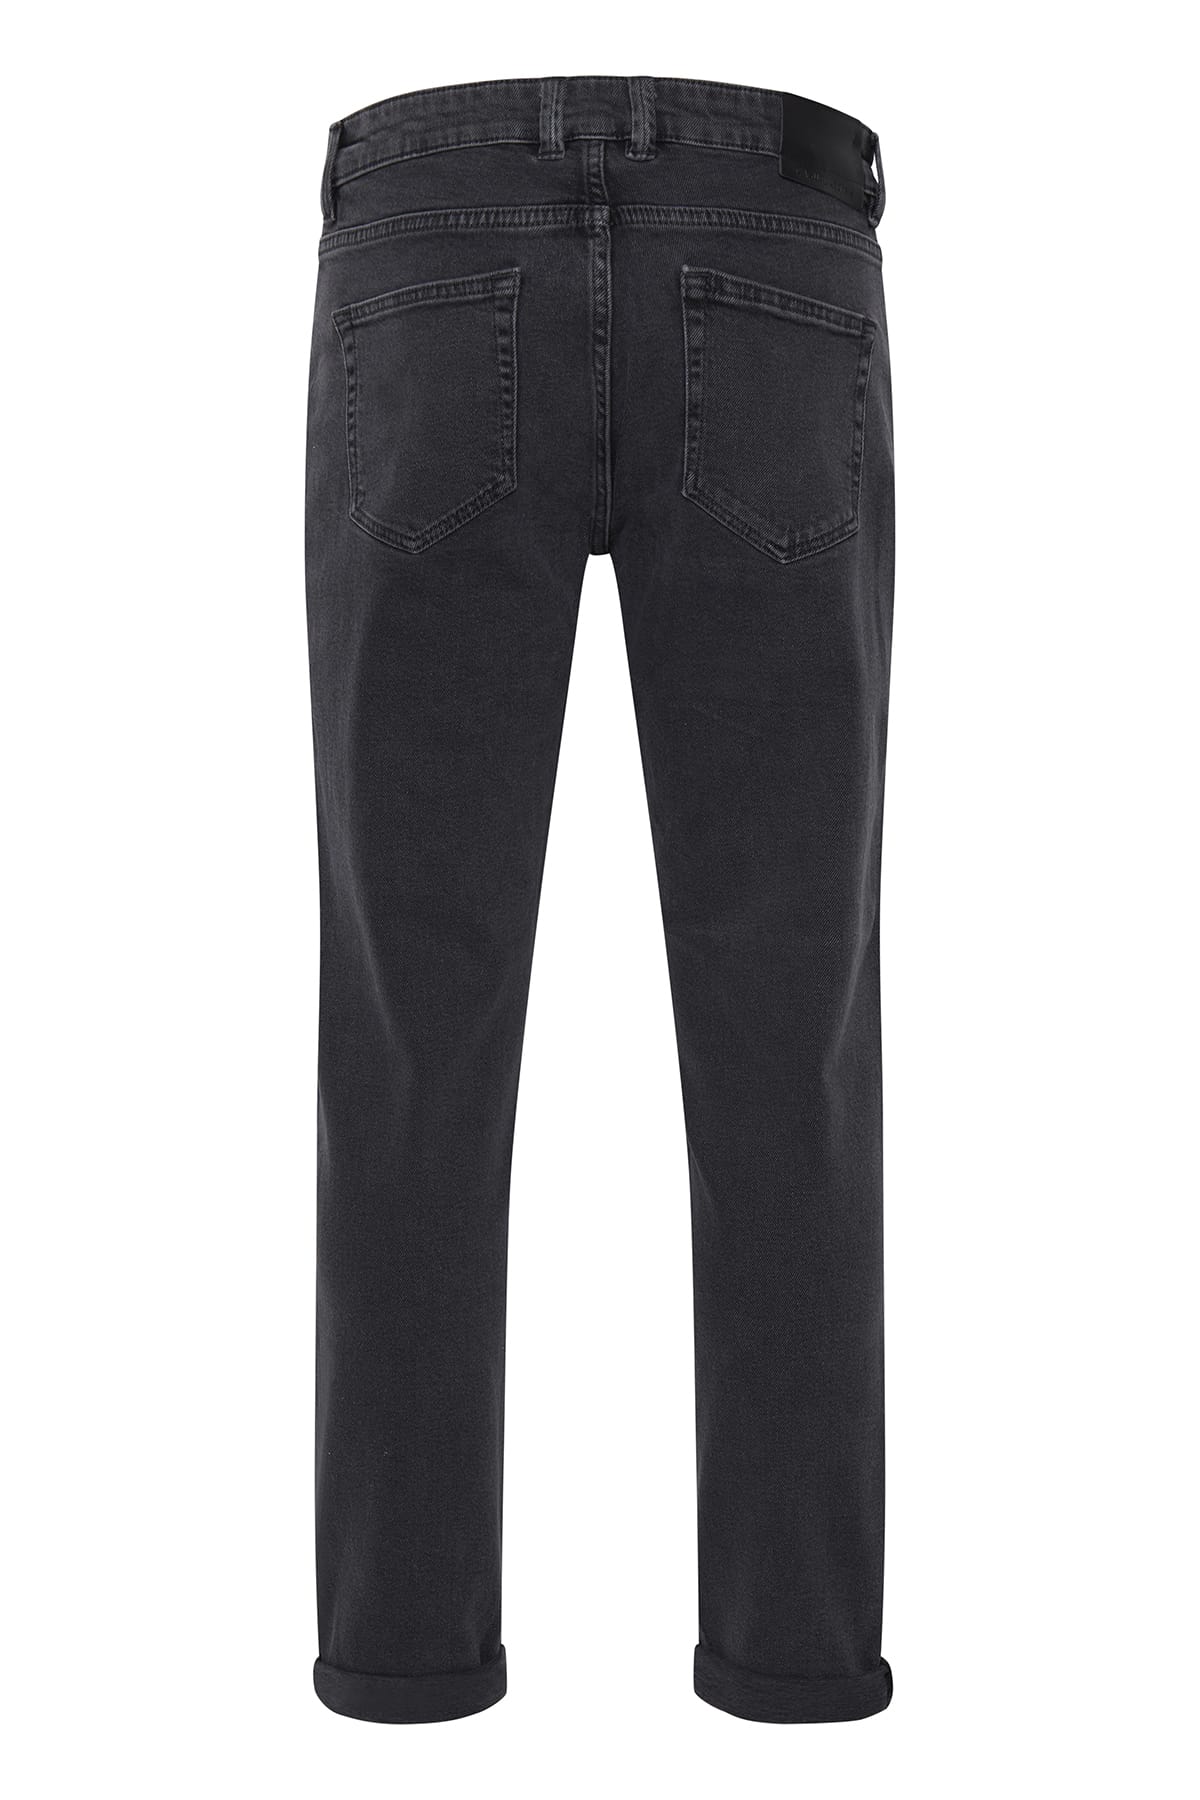 Jeans Karup 5 pocket regular jeans - ISKO Denim grey Jeans Casual Friday 